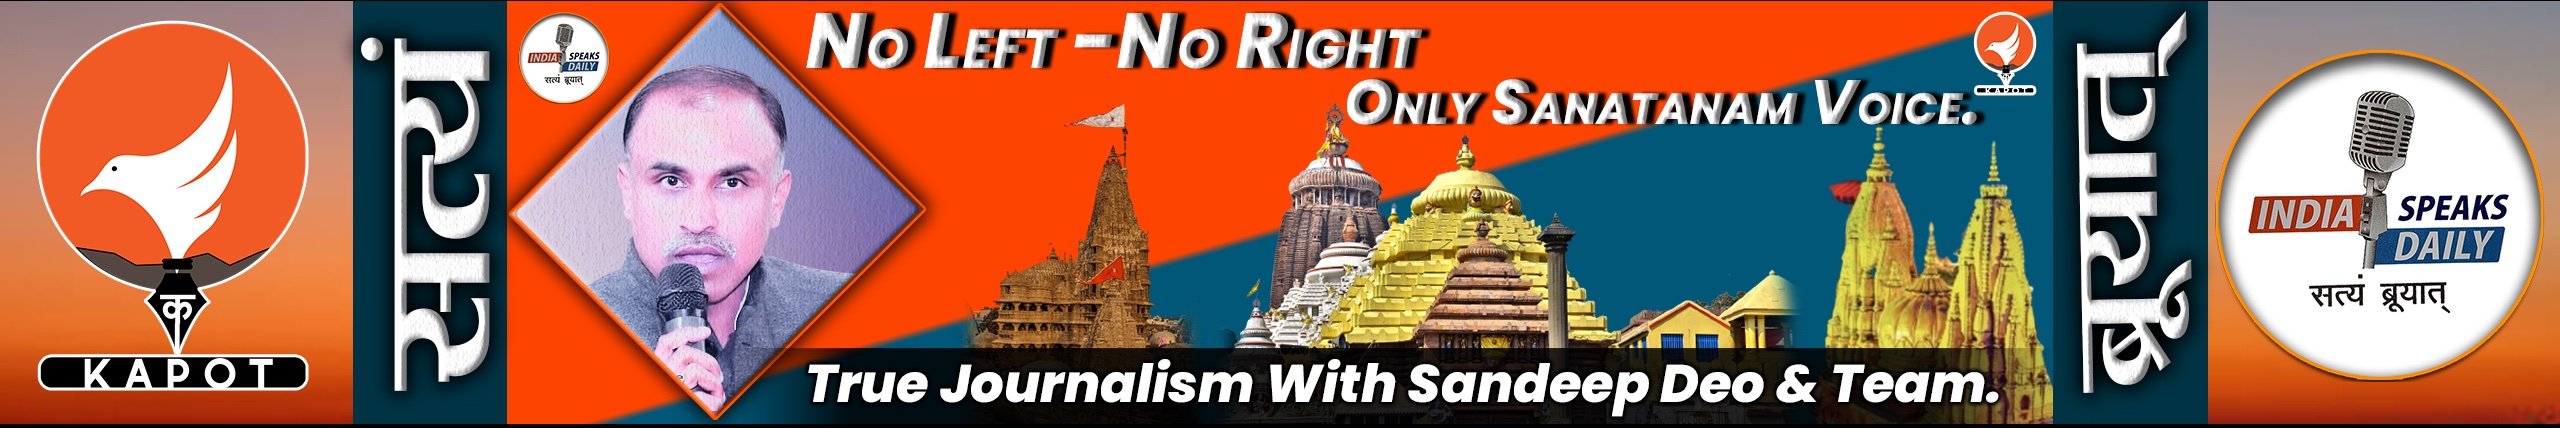 No Left - No Right Only Sanatanam Voice